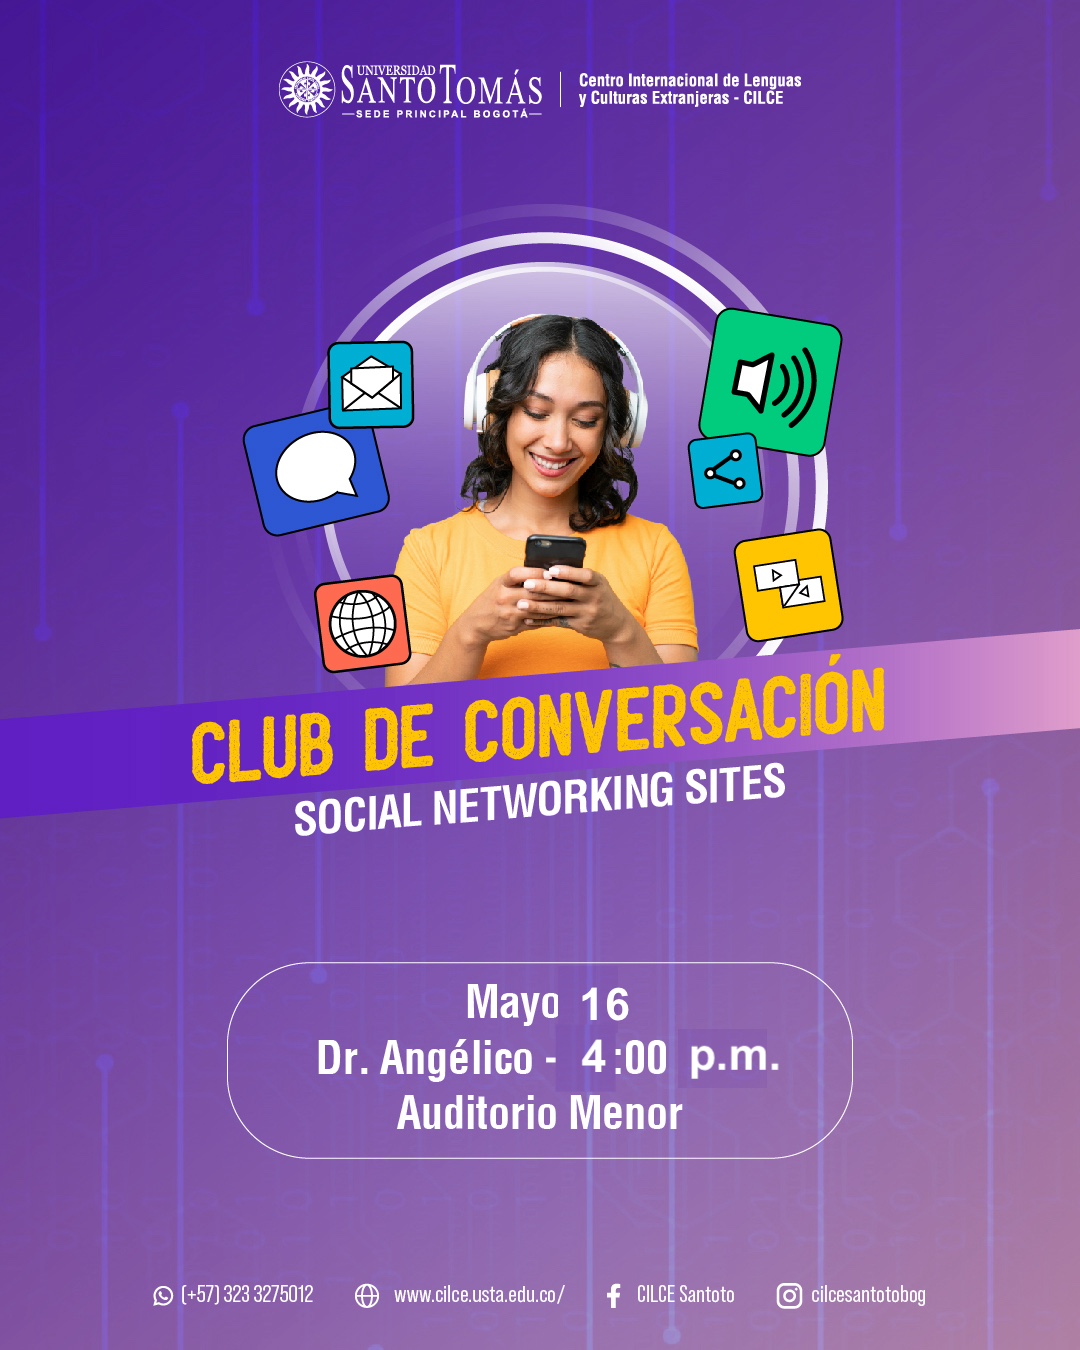 4th Club de conversacion social networking sites